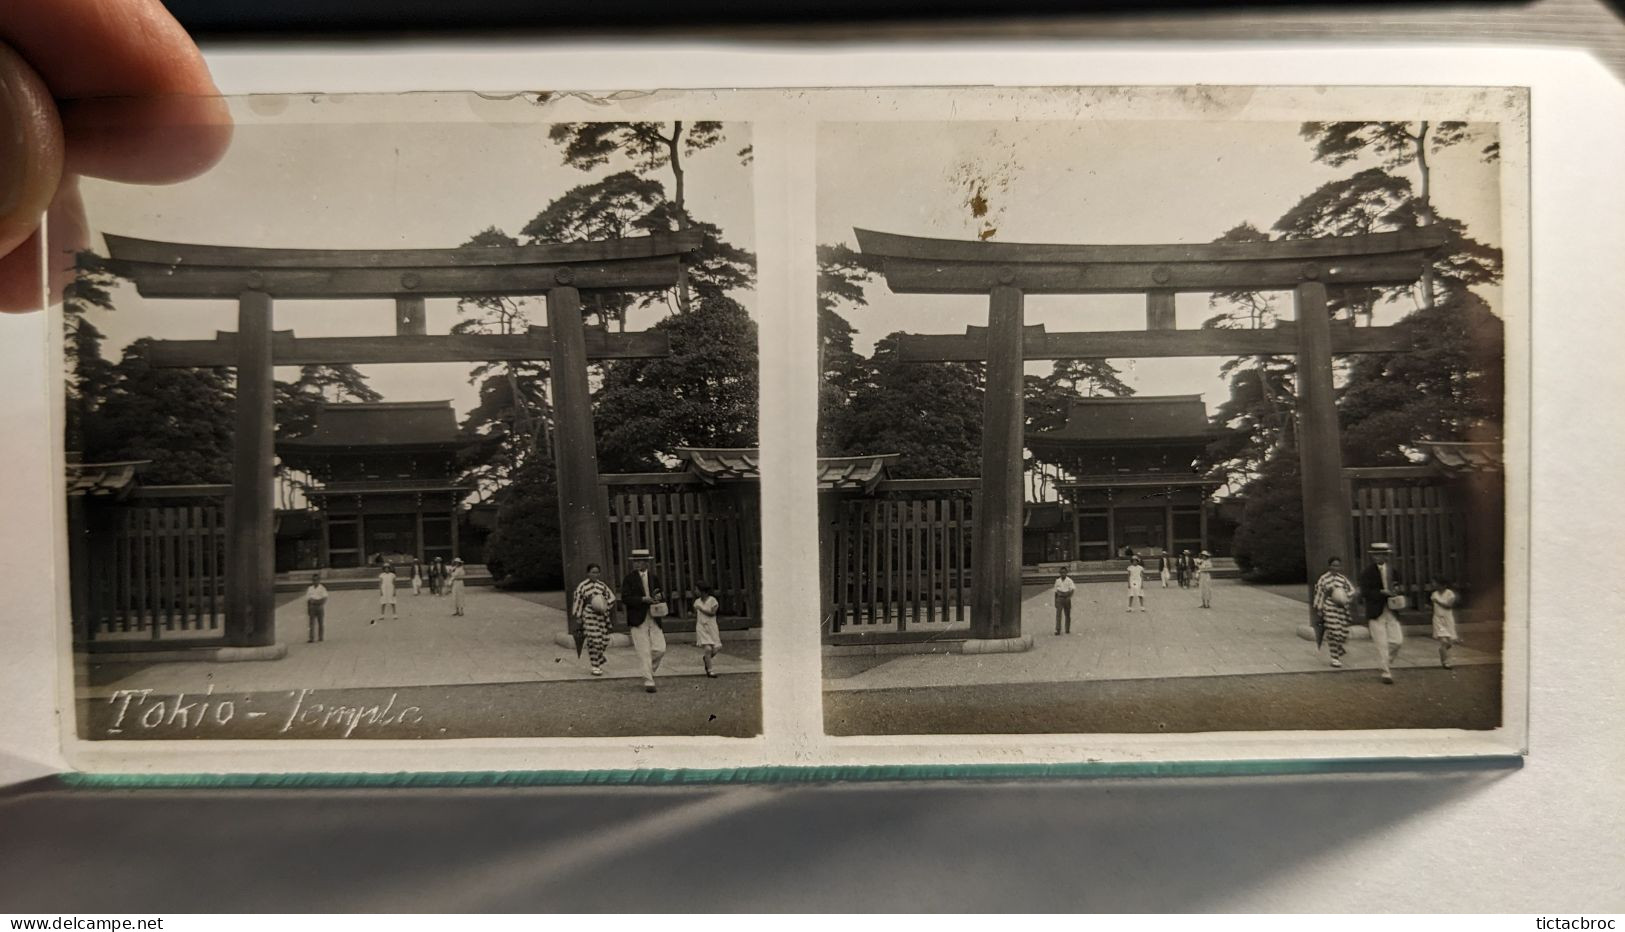 Photographie Stéréoscopique Plaque De Verre Tokio Tokyo Japon Temple Début XXème - Glasplaten